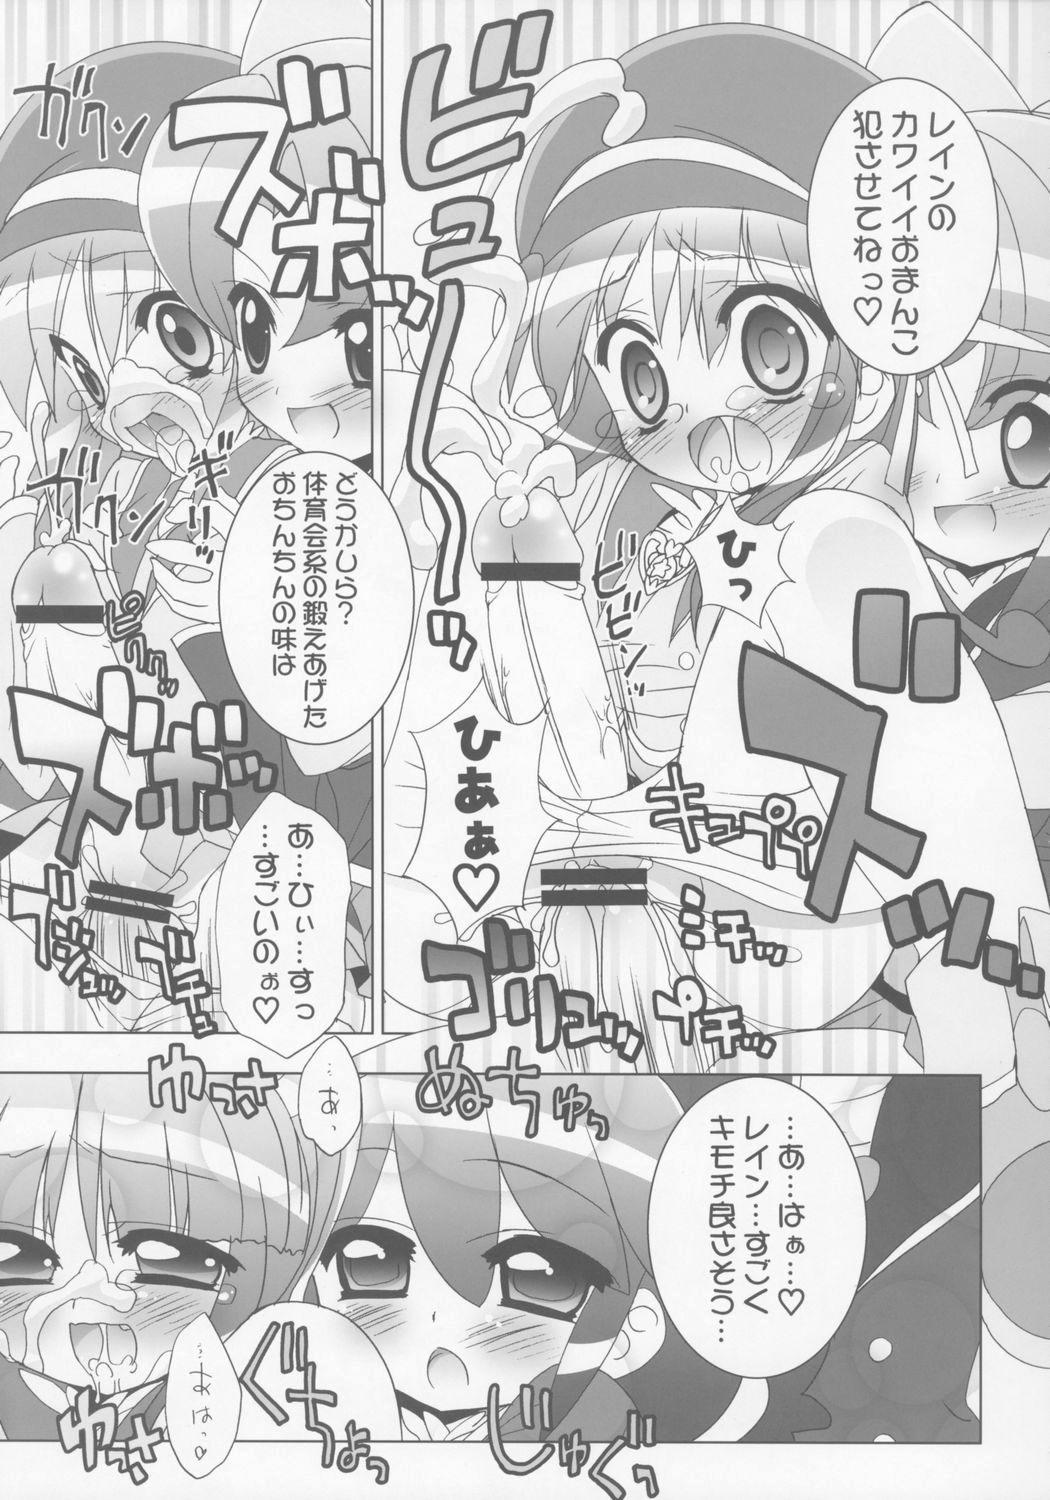 Slapping Gakuen Nakayoshi Daisakusen Samba! - Fushigiboshi no futagohime Sexy Whores - Page 8